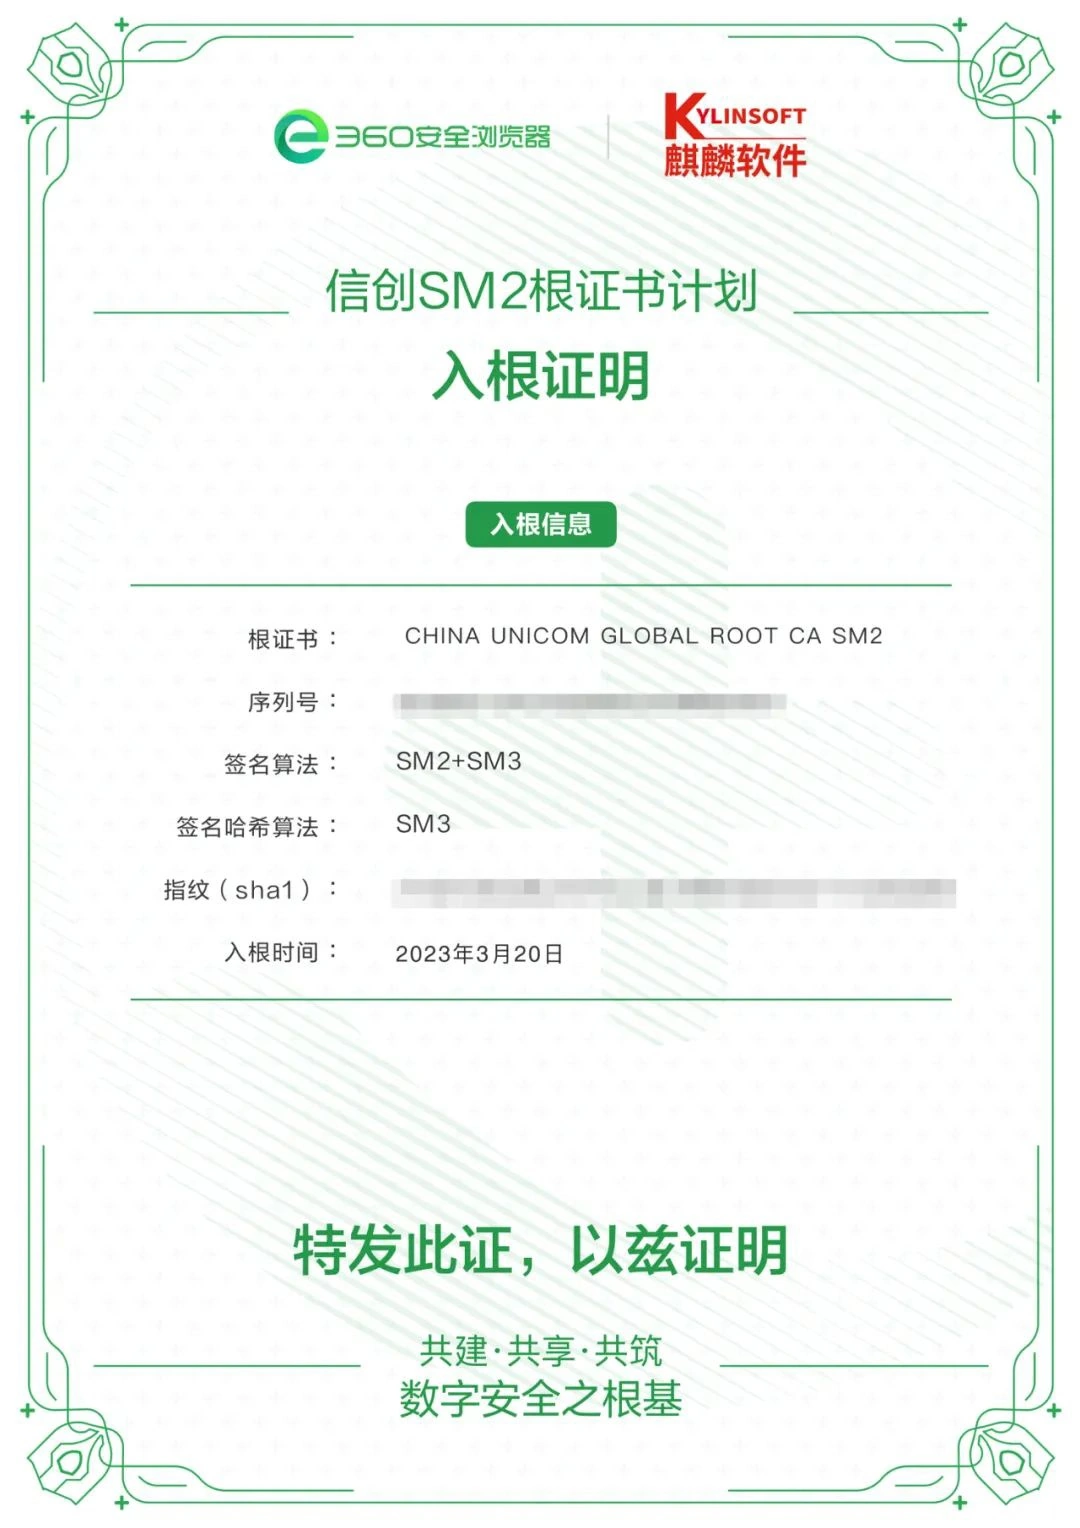 耀世娱乐登录：中国联通 CA 加入 SM2 国密根证书库，入根后将内置于 360 安全浏览器 / 银河麒麟系统中